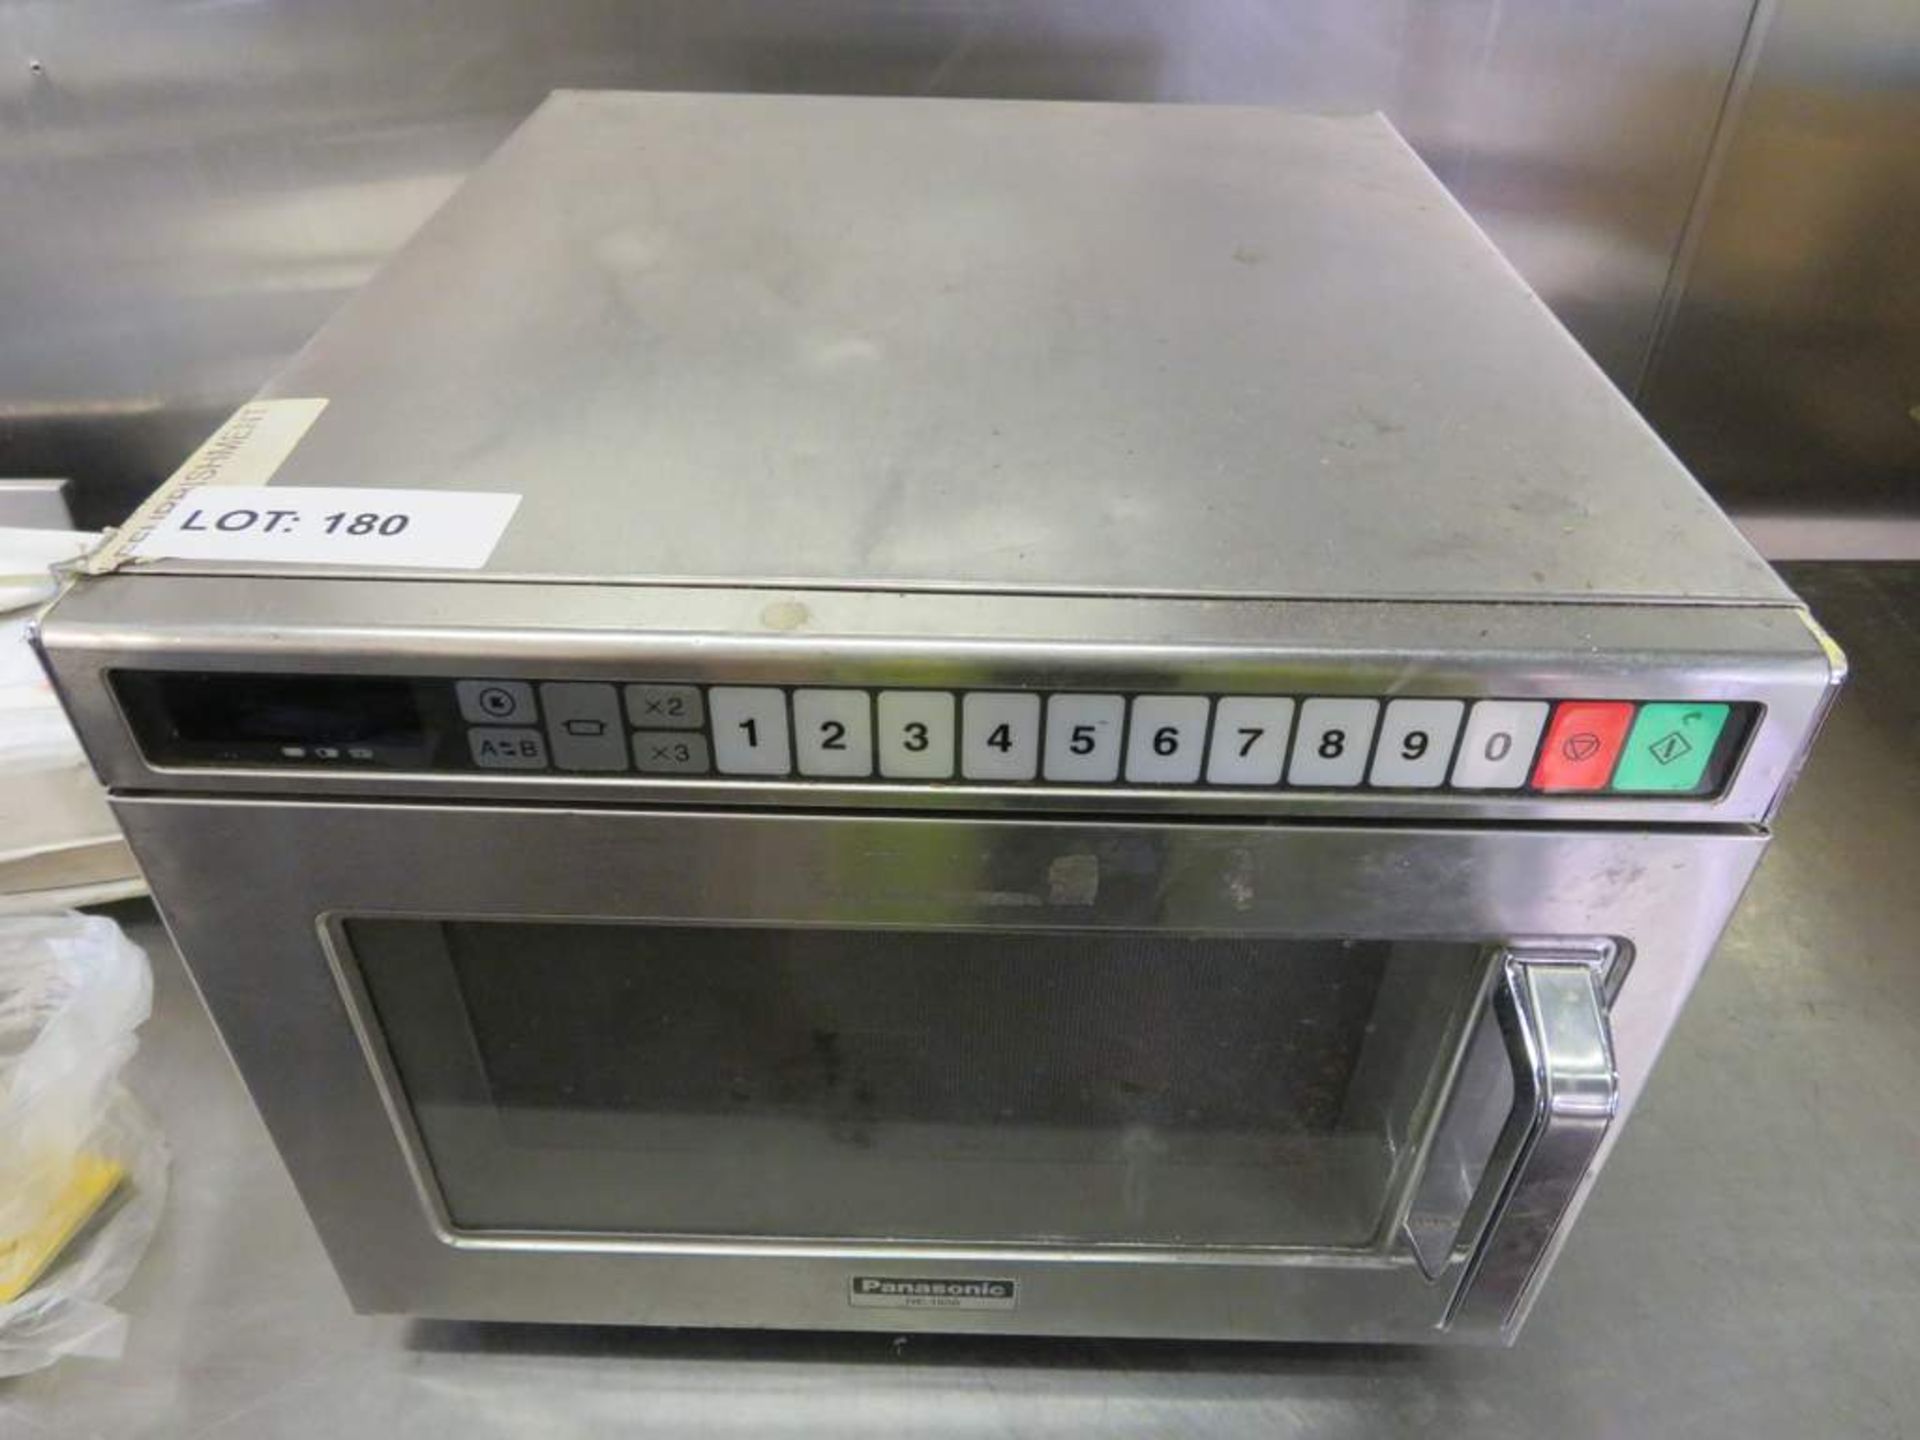 Panasonic stainless steel commercial microwave. Model:NE-1856.